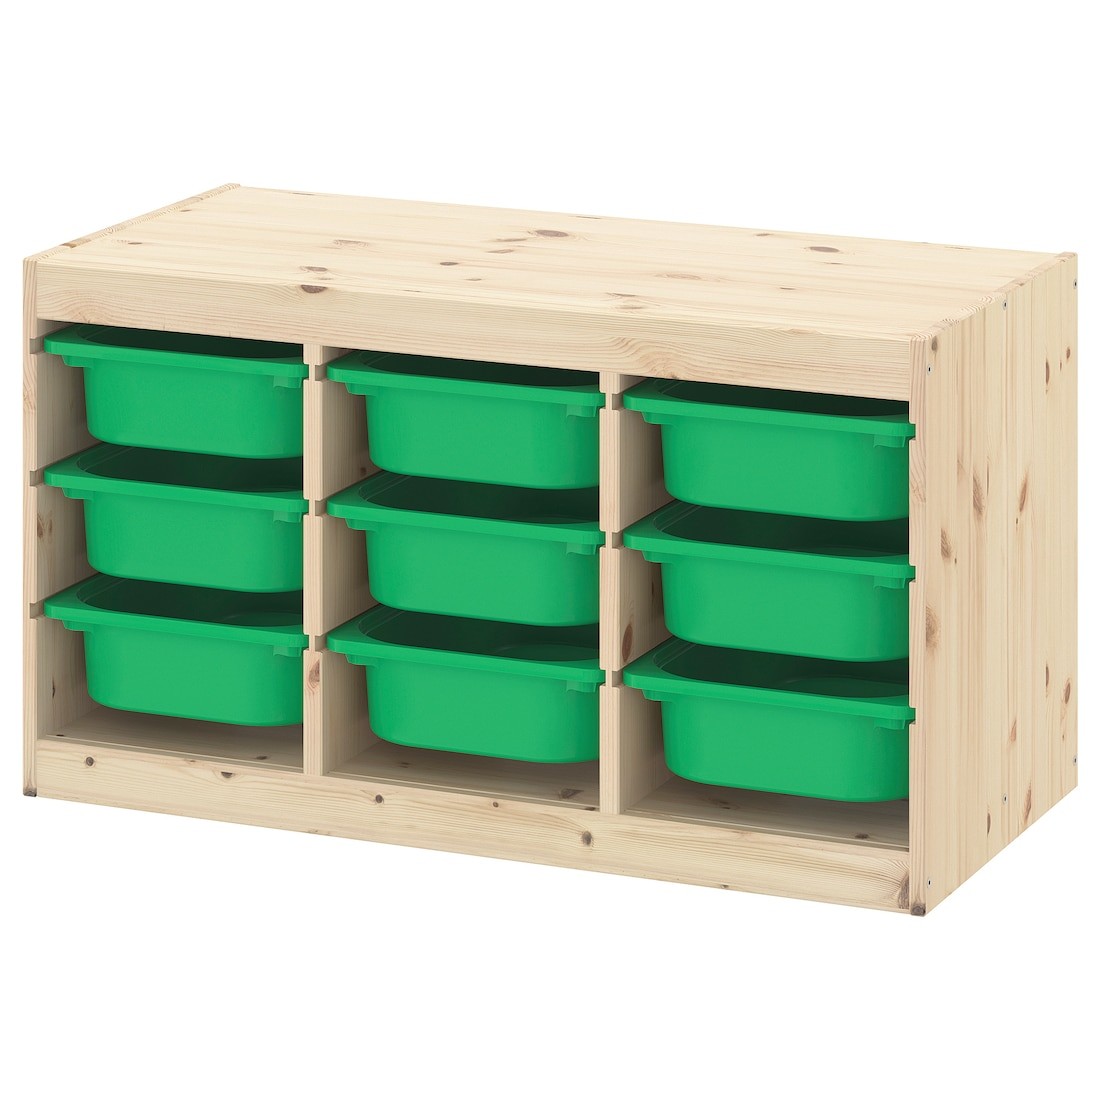 IKEA TROFAST ТРУФАСТ Комбинация для хранения + контейнеры, светлая беленая сосна / зеленый, 93x44x52 cм 59331550 593.315.50